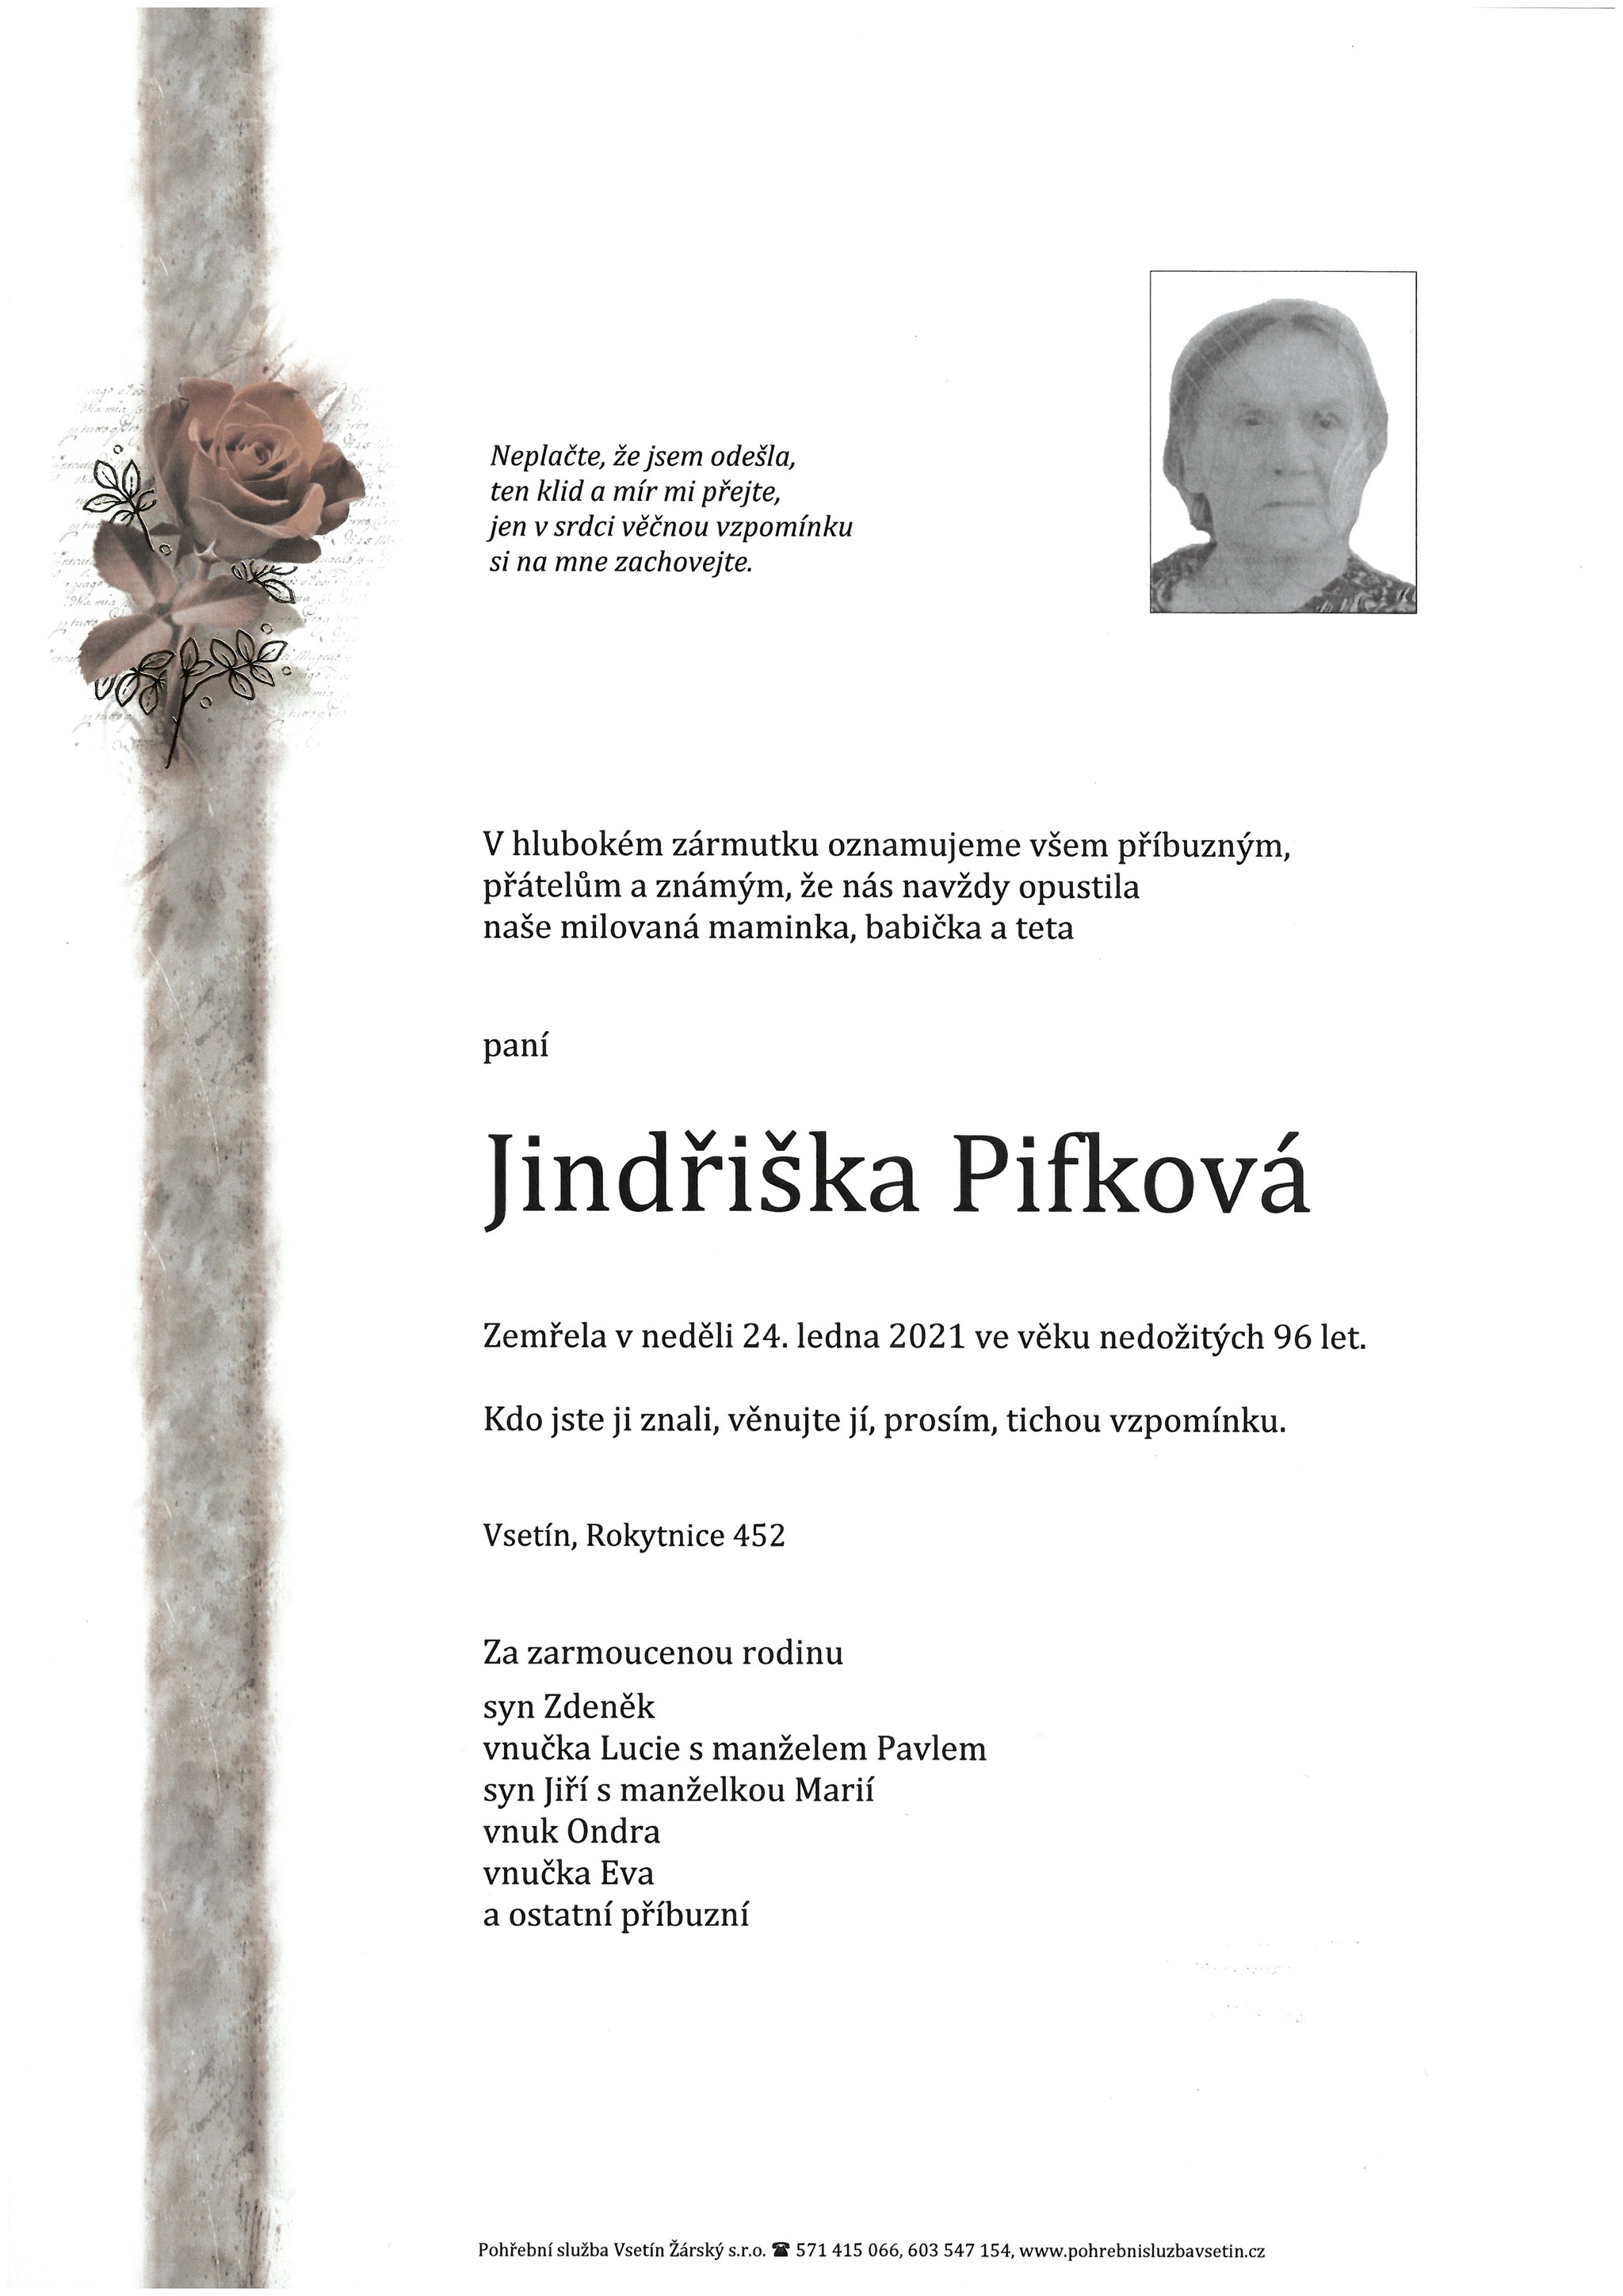 Jindřiška Pifková